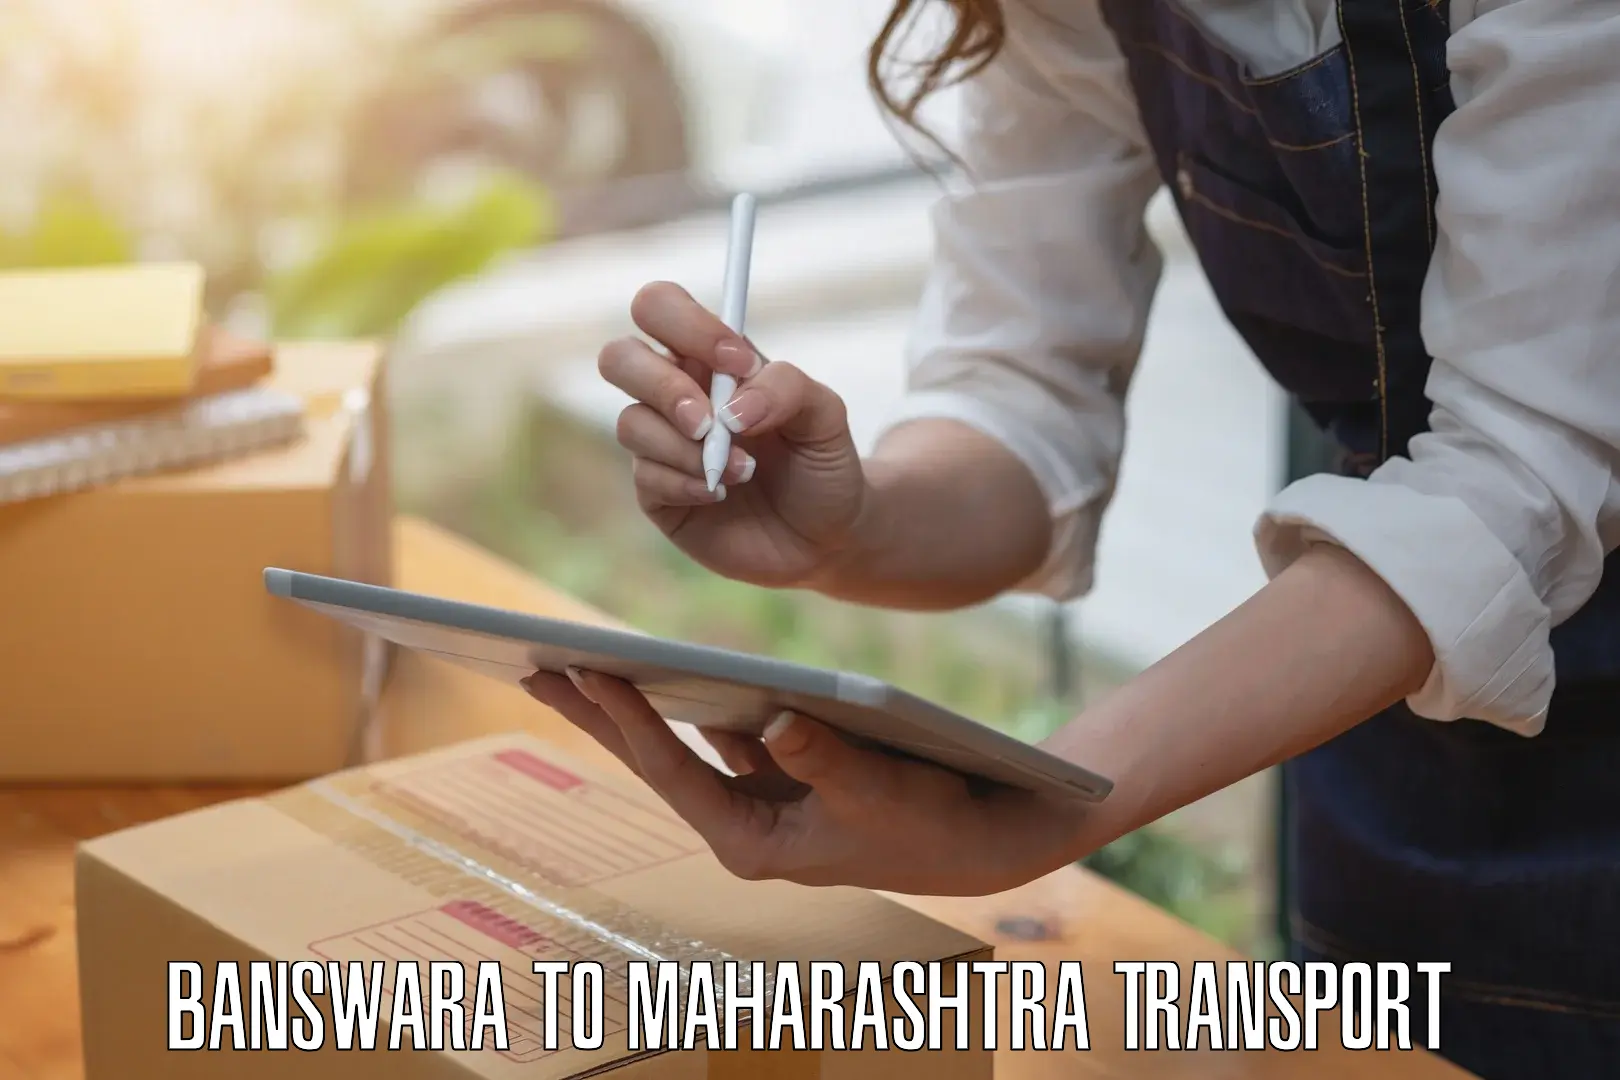 Bike transport service Banswara to Mumbai